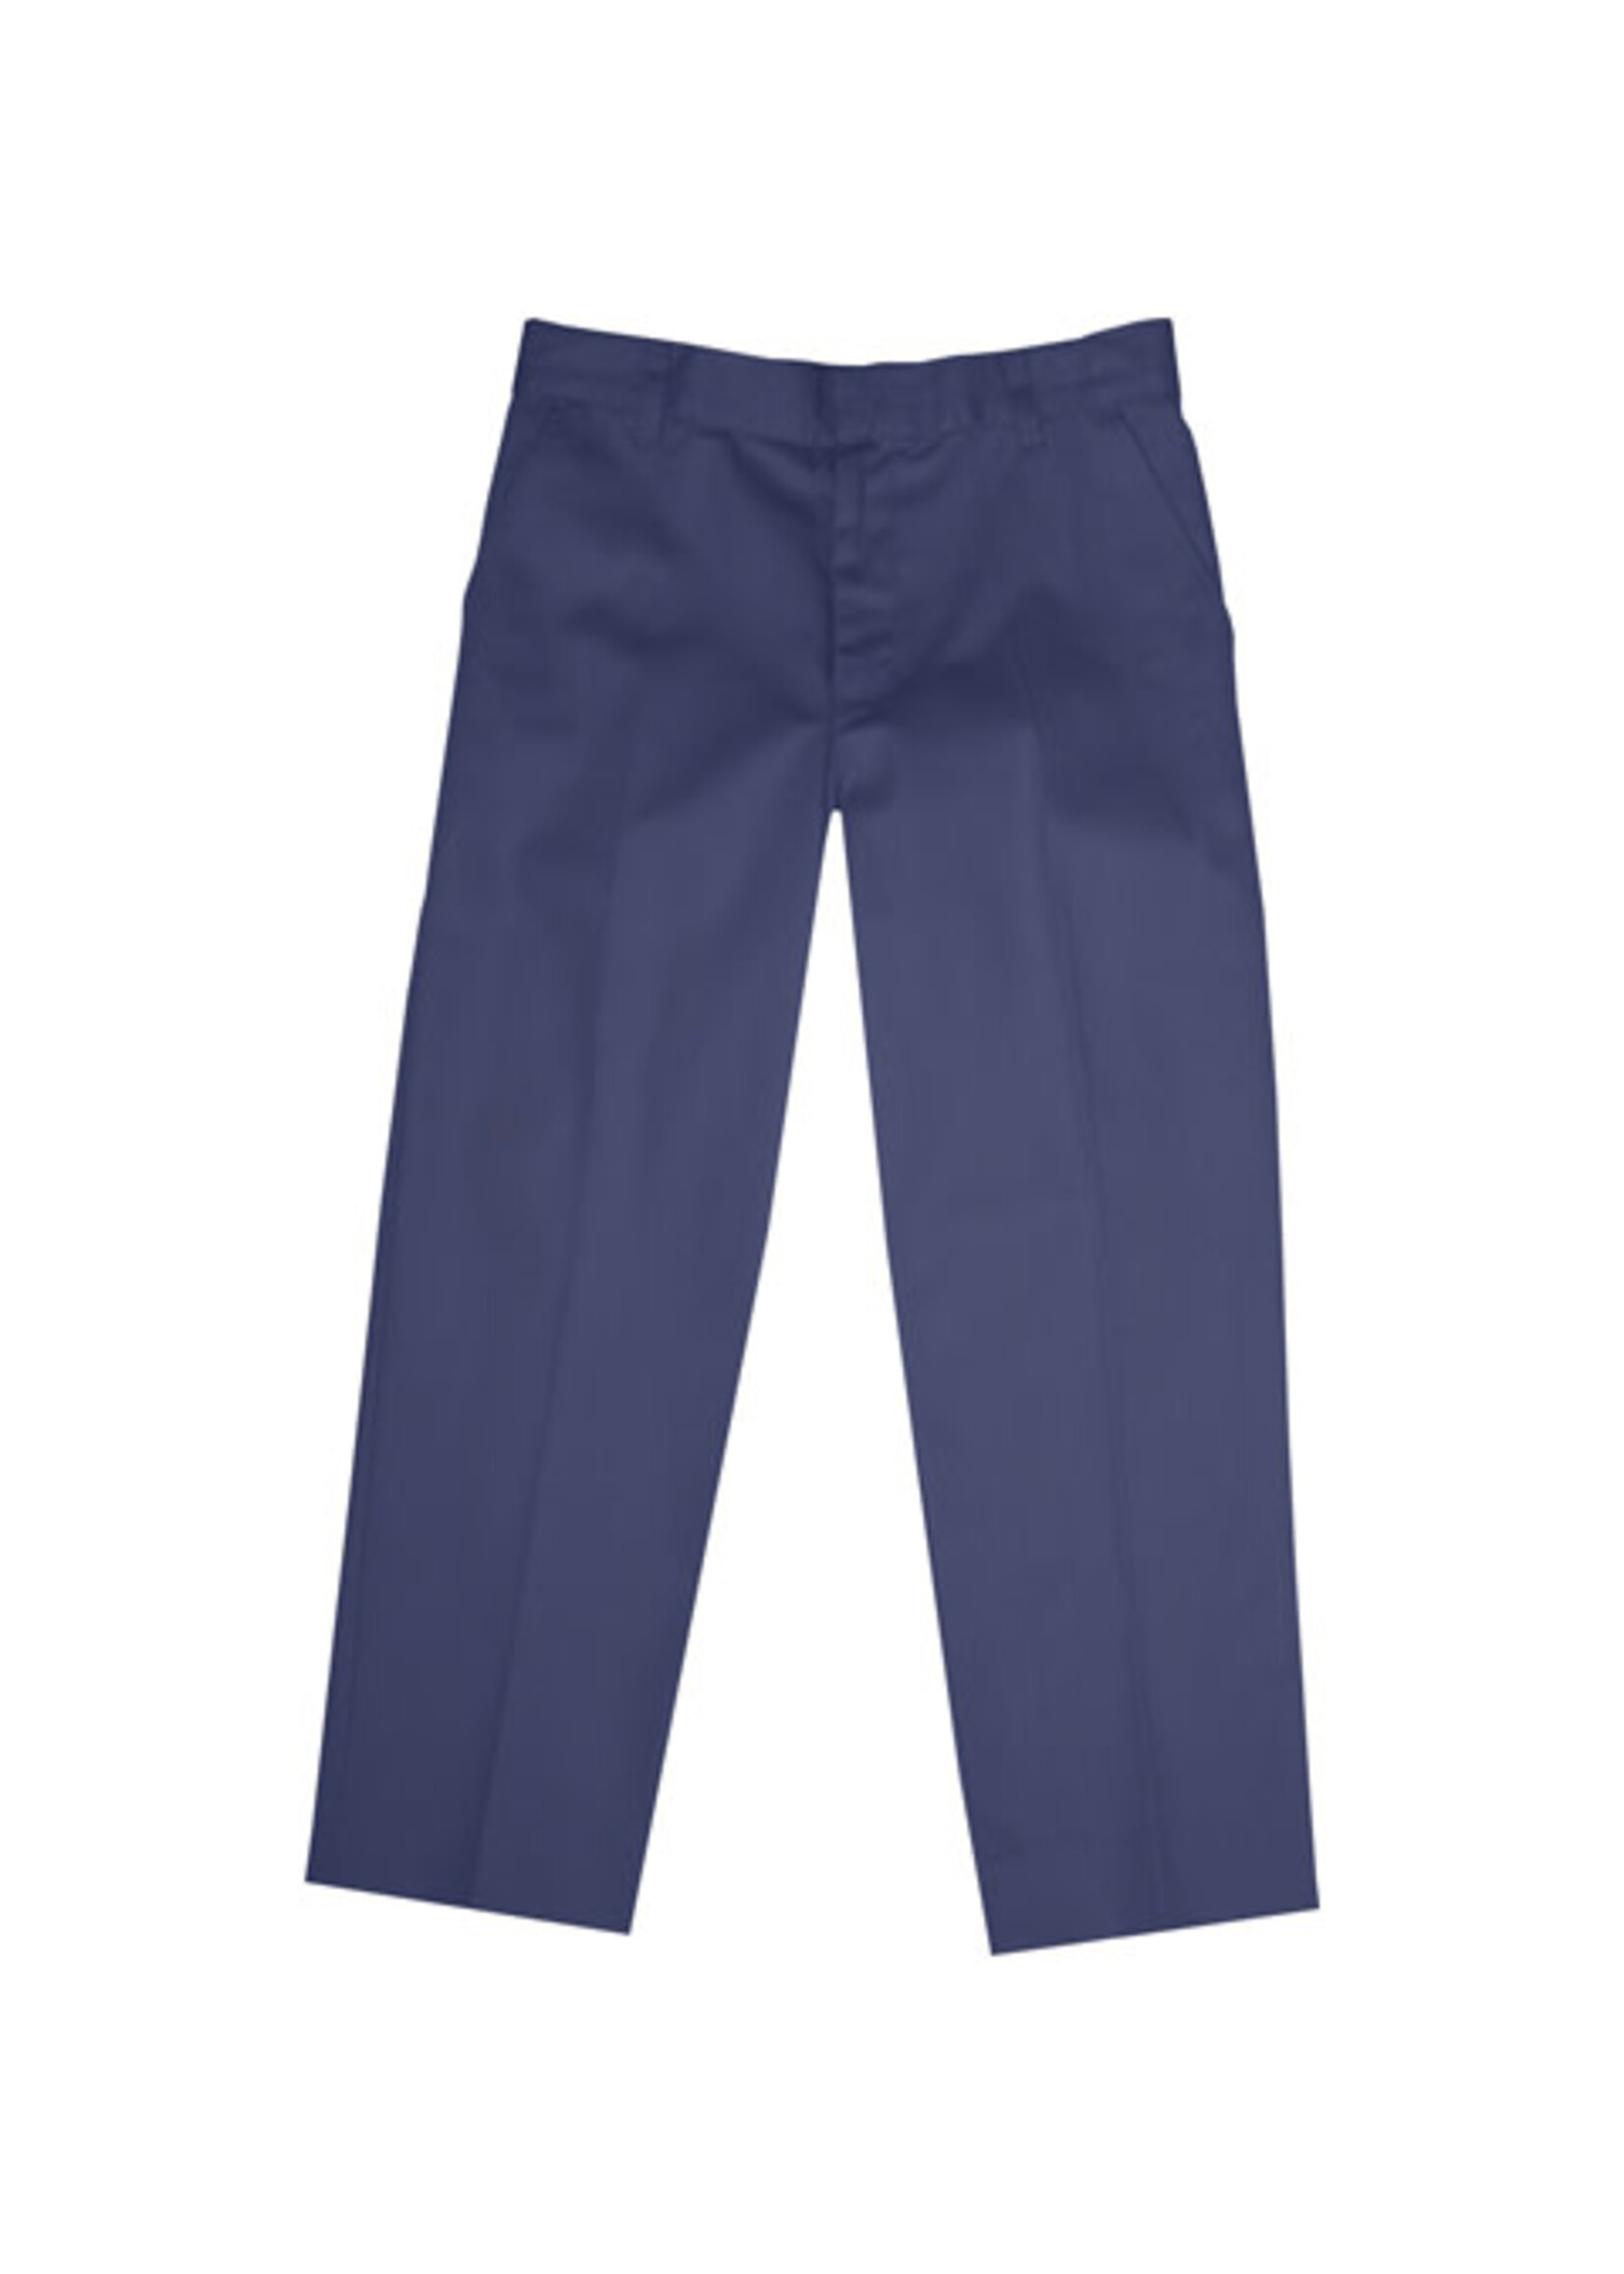 Boys Navy Value Flat Front Pants